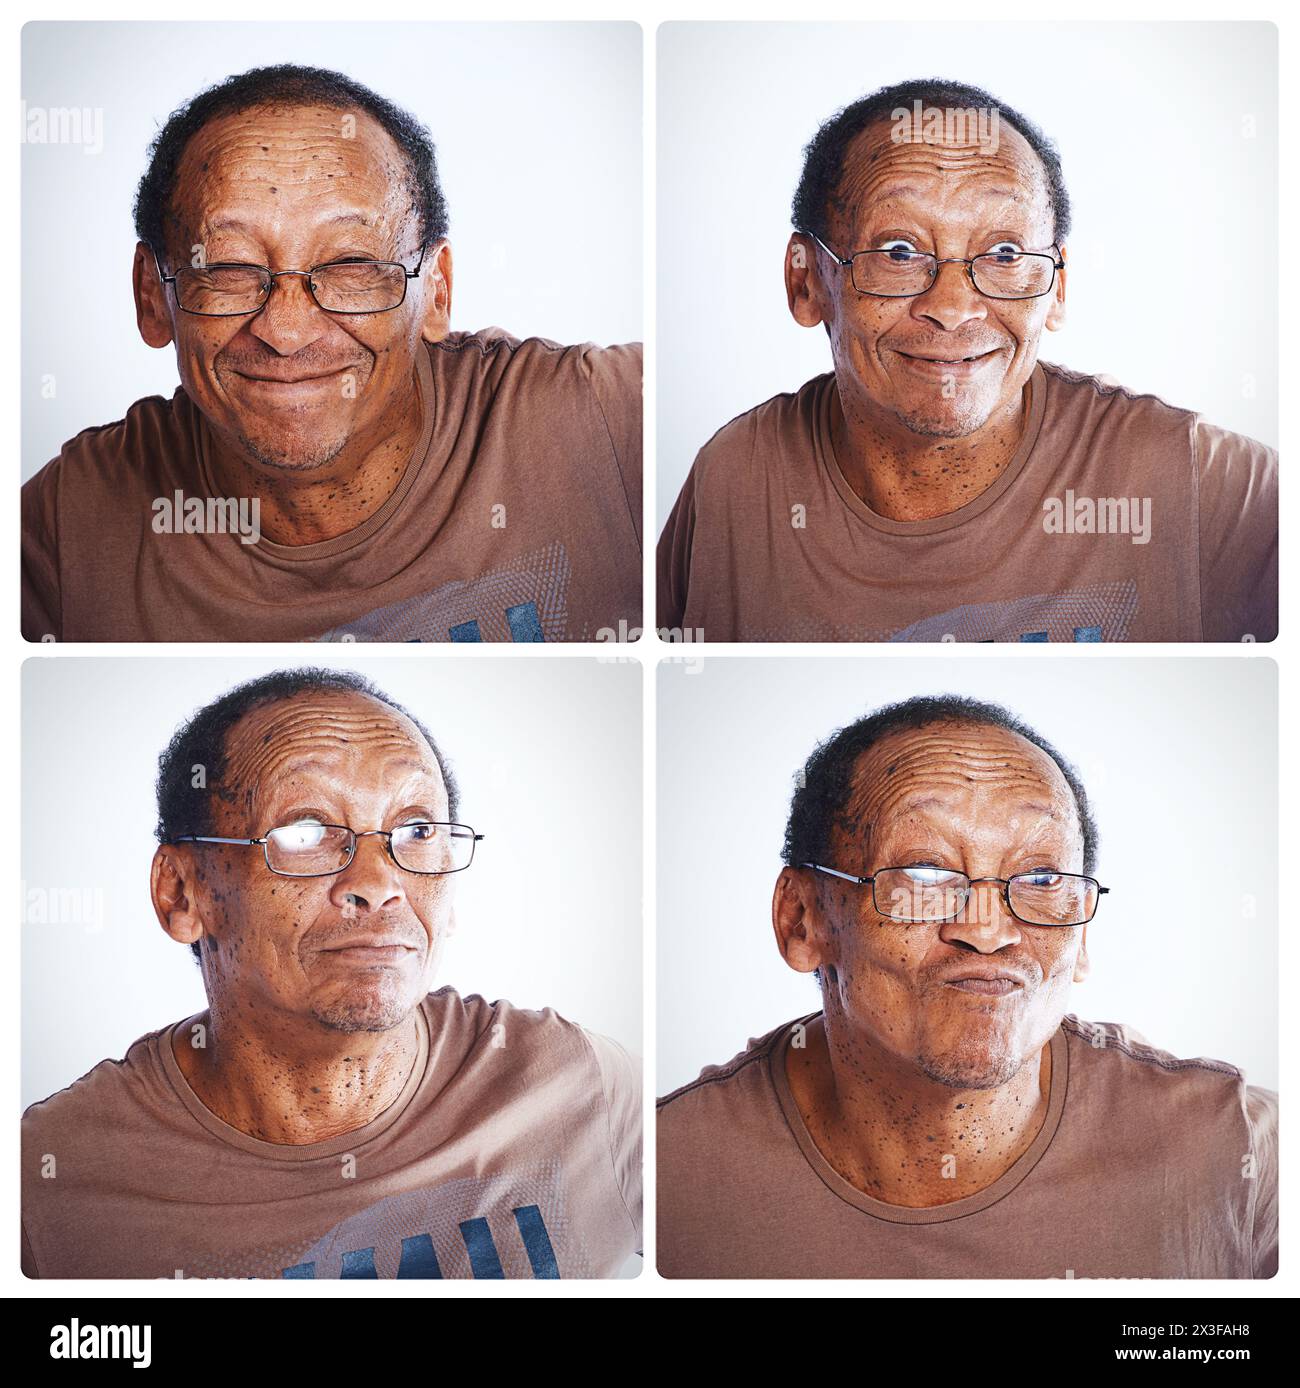 Senior, homme et collage avec des visages drôles pour la comédie, l'humour ou la personnalité en montage. Personne âgée masculine avec sourire ou lunettes dans la collection, cadre Banque D'Images